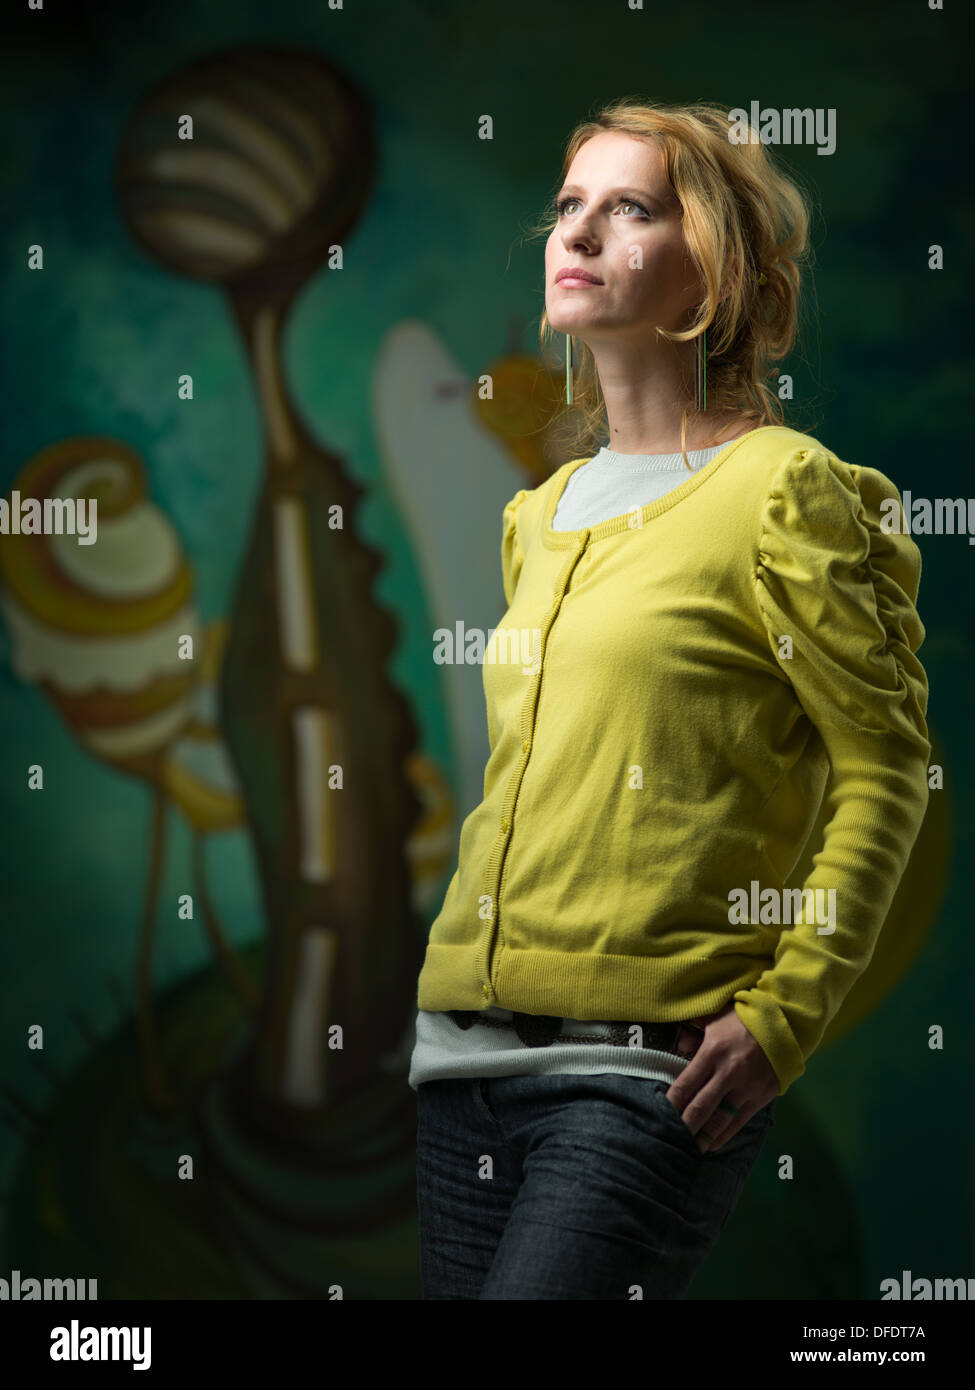 Portrait de beau portrait femme debout face à une lumière et de poser dans une galerie d'art Banque D'Images